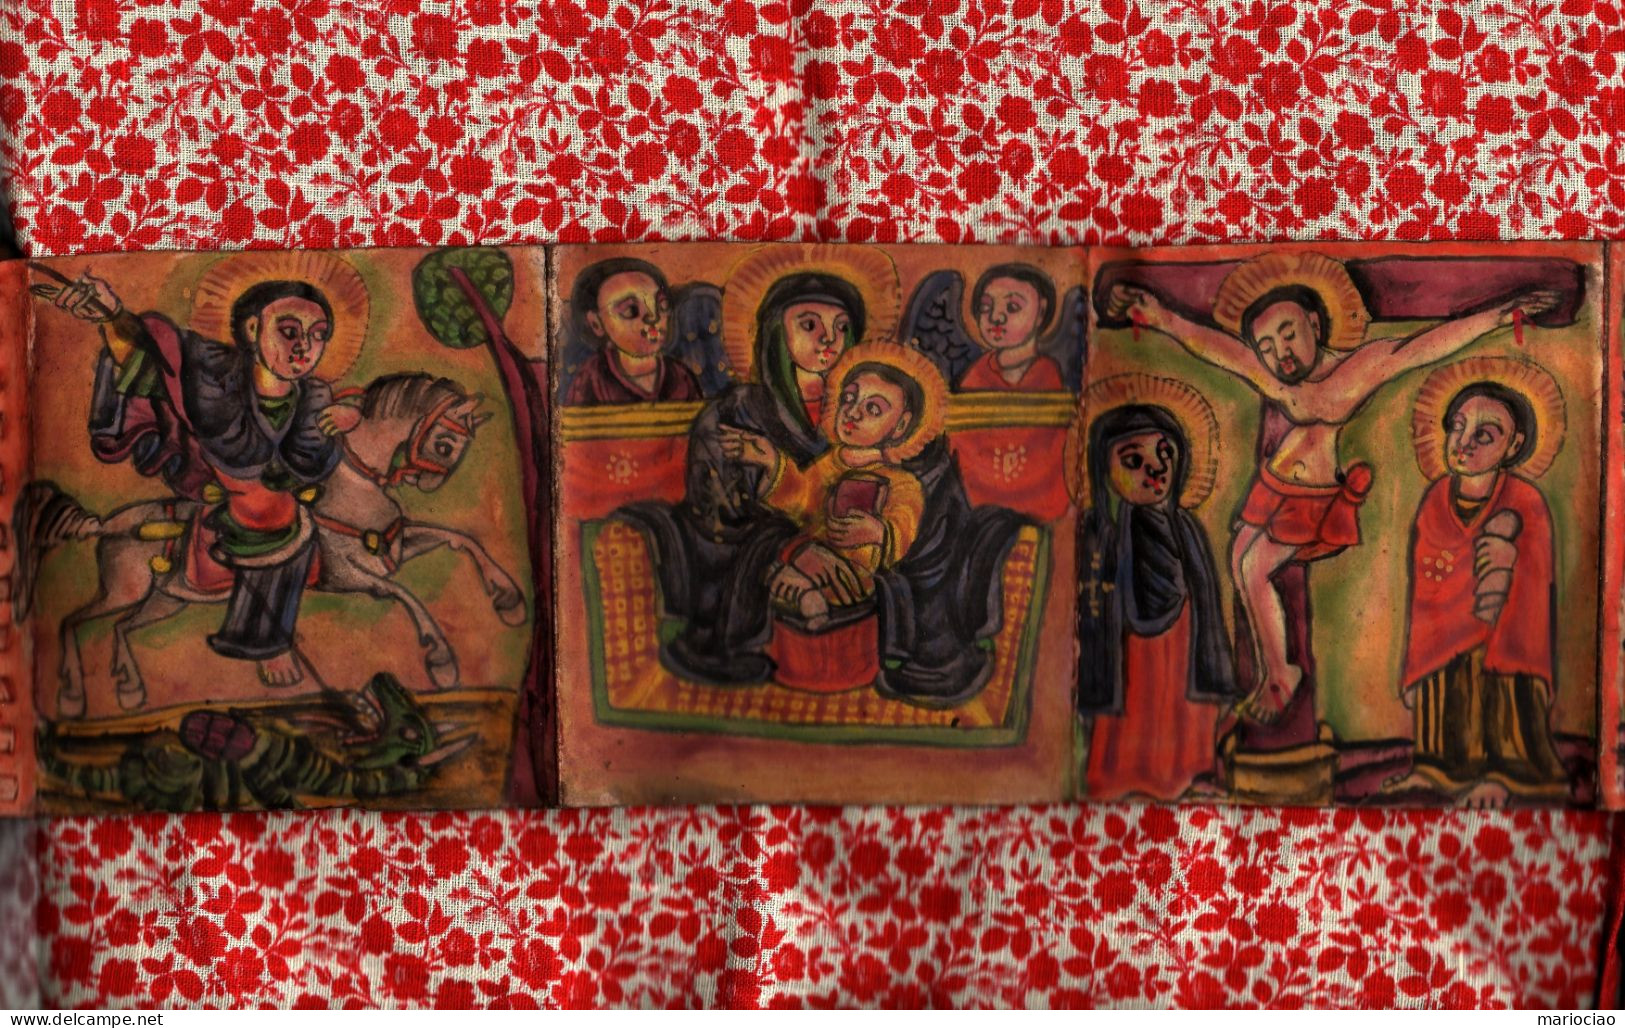 L-ETH Etiopia 18 dipinti su Pergamena - Ethiopian livre avec 18 peintures à la main sur peau - Religion Copte.